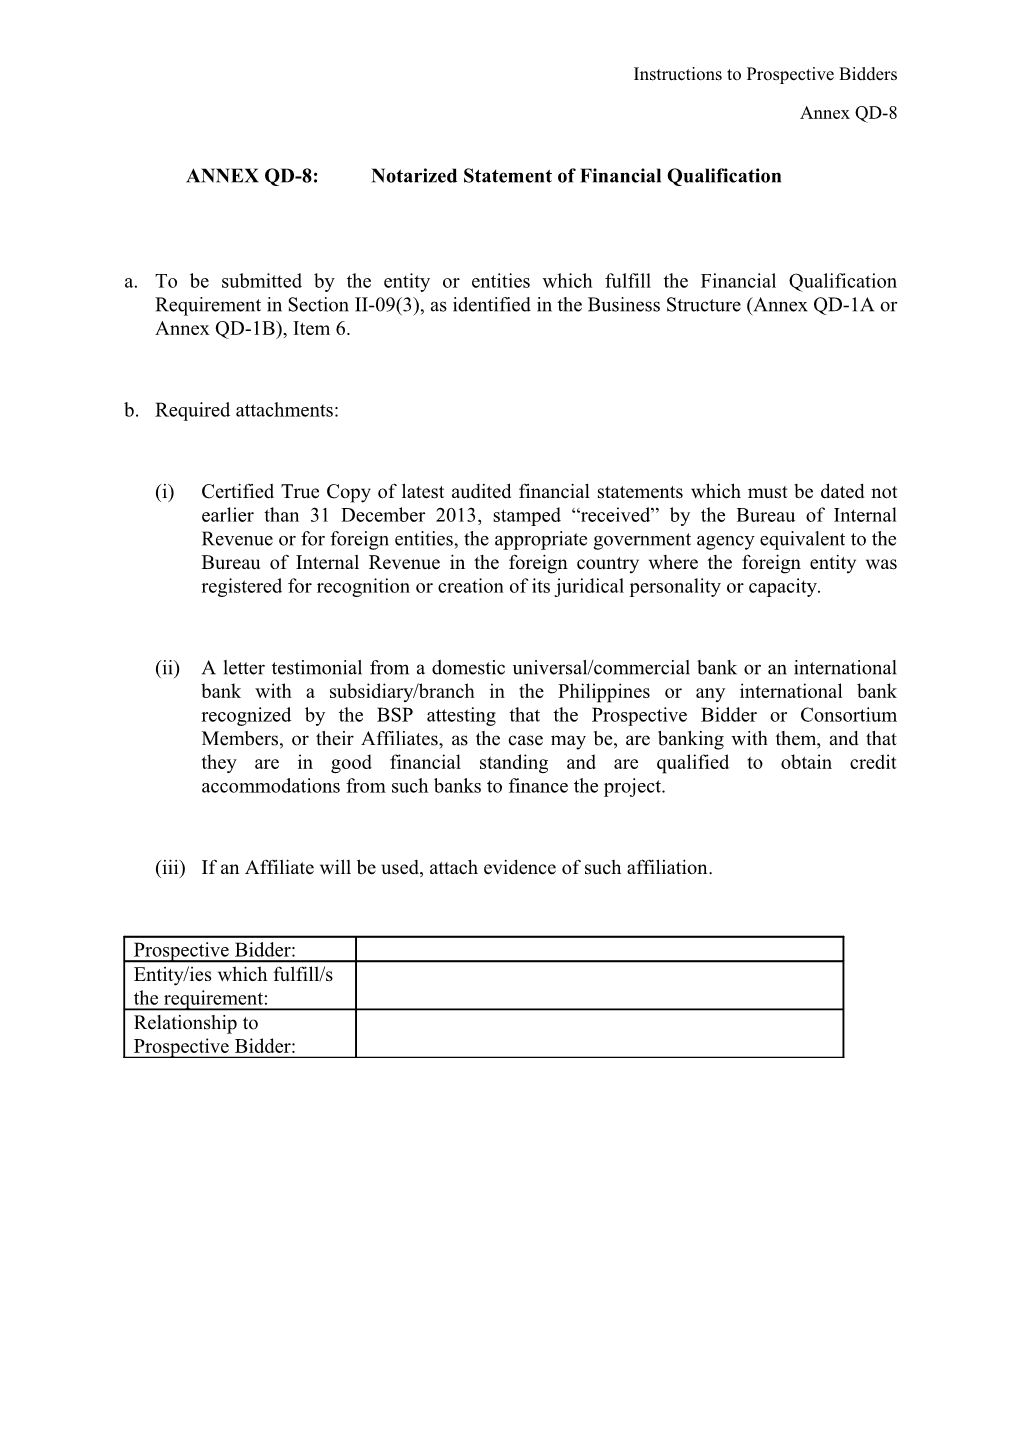 ANNEX QD-8:Notarized Statement of Financial Qualification